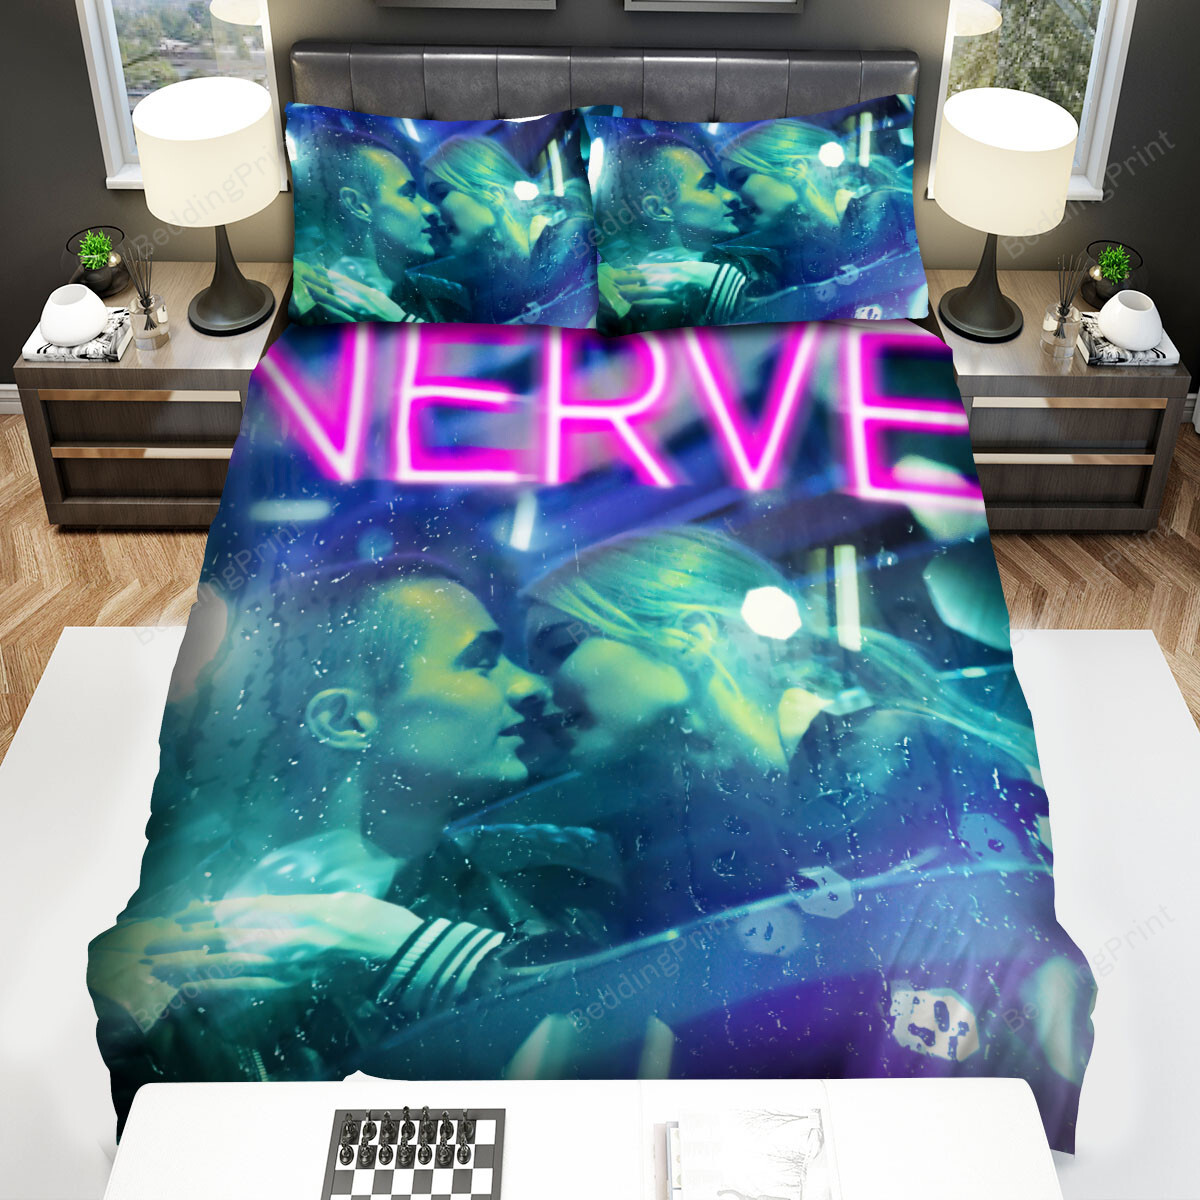 Nerve (I) (2016) Challenge Kiss A Stranger Movie Poster Bed Sheets Spread Comforter Duvet Cover Bedding Sets